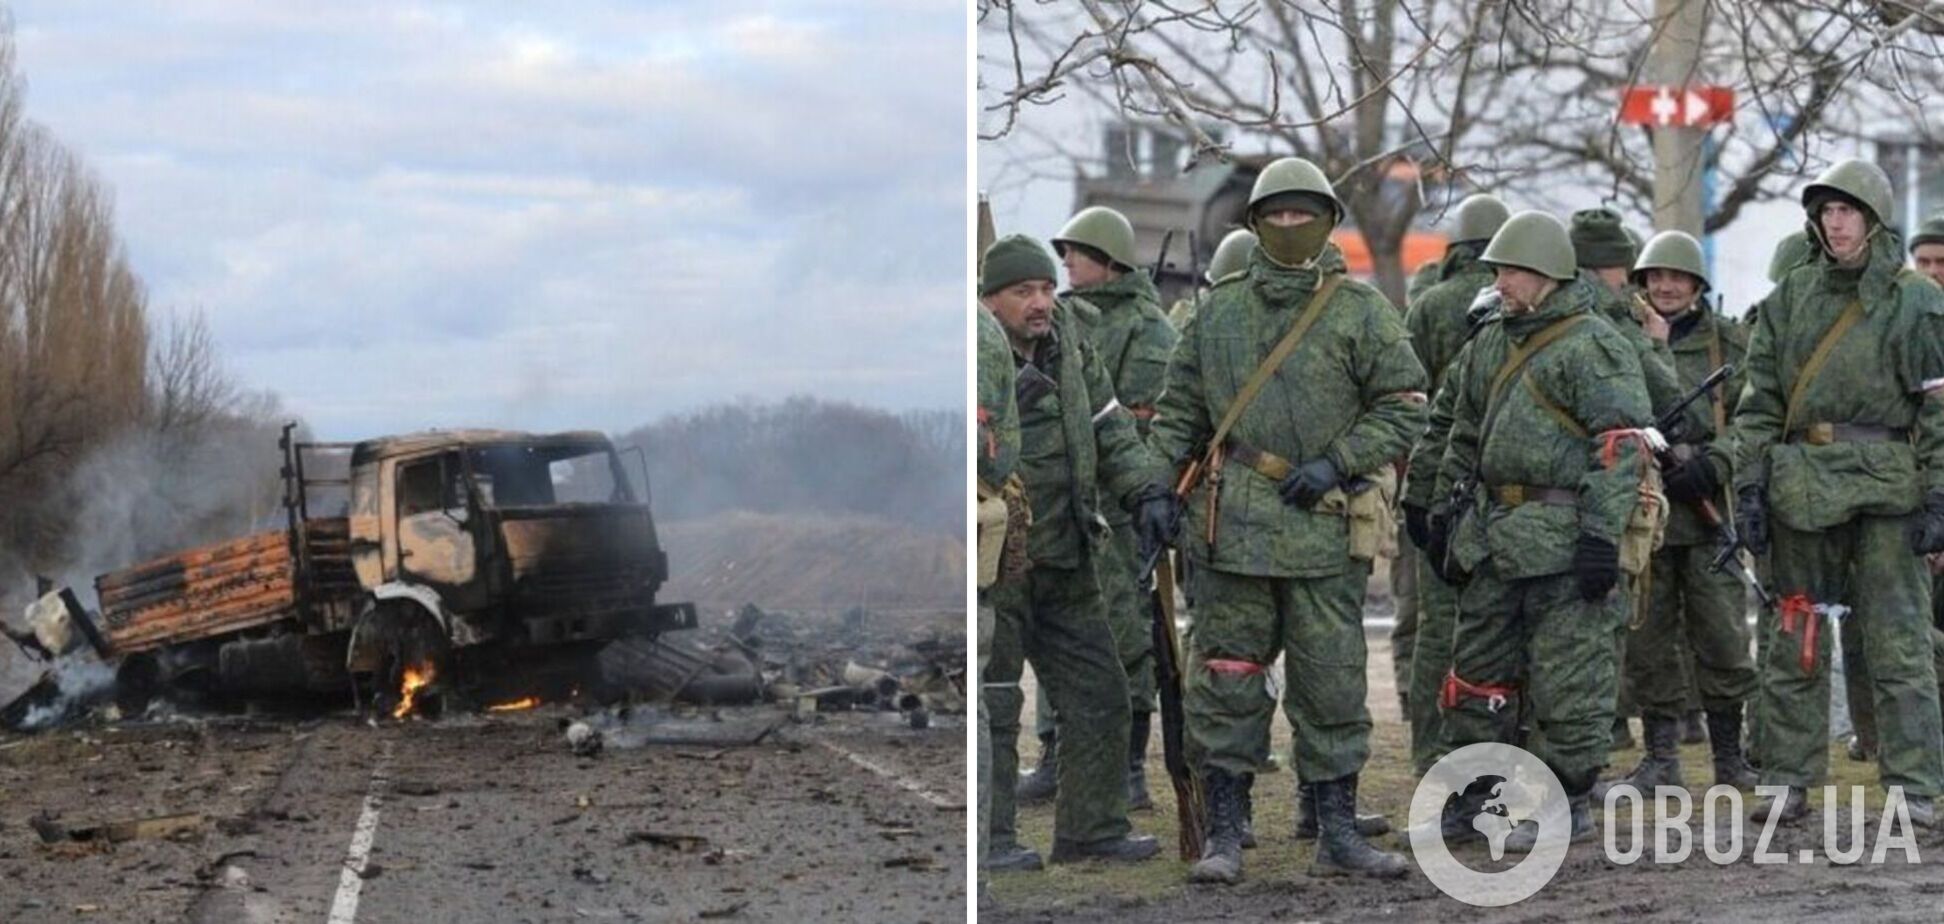 Проблеми не лише з логістикою: військові РФ в Україні отримали обмороження через відсутність спорядження